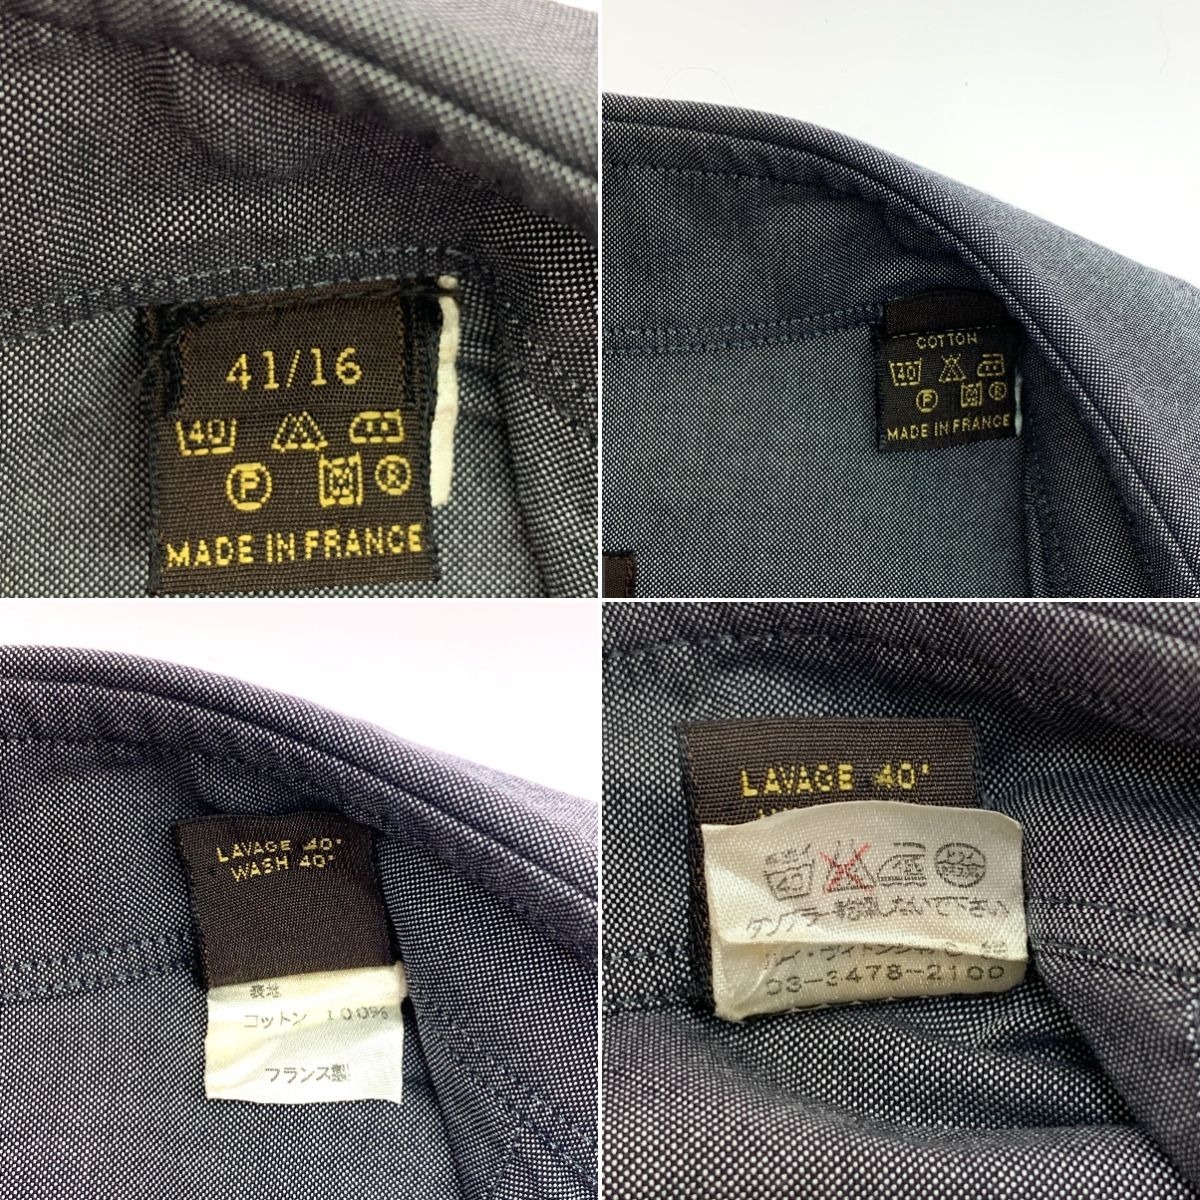 $$ LOUIS VUITTON Louis Vuitton men's dress shirt size 41/16 gray scratch . dirt equipped 